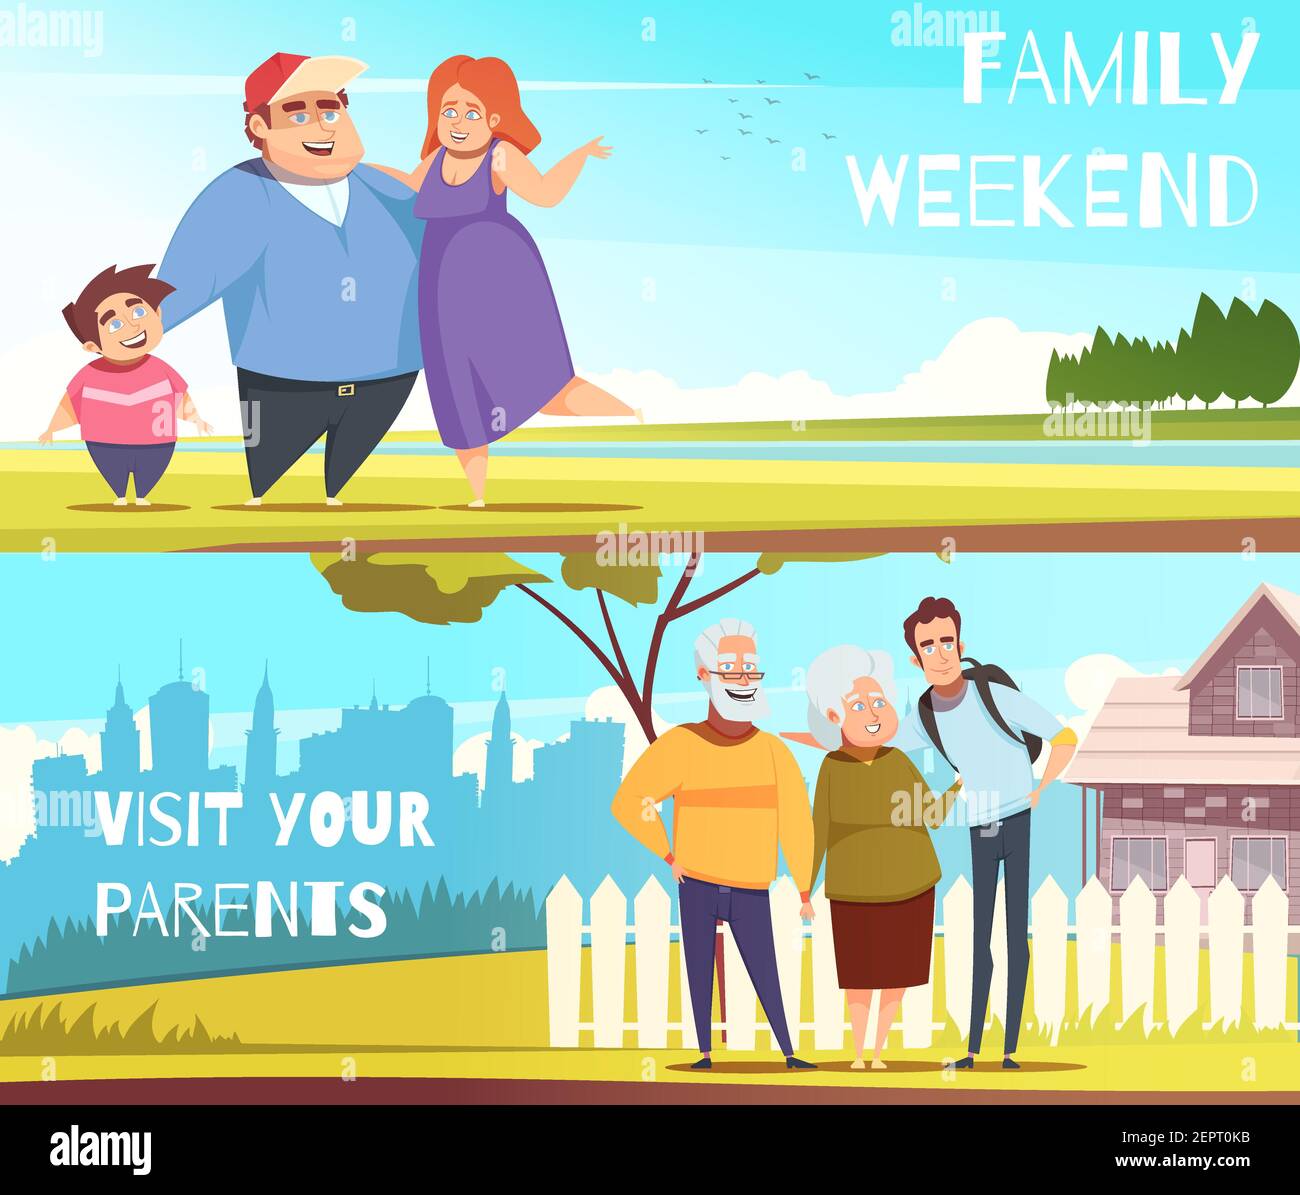 Familien Satz von horizontalen Banner mit Wochenende auf Natur und Besuch bei den Eltern, isolierte Vektor-Illustration Stock Vektor